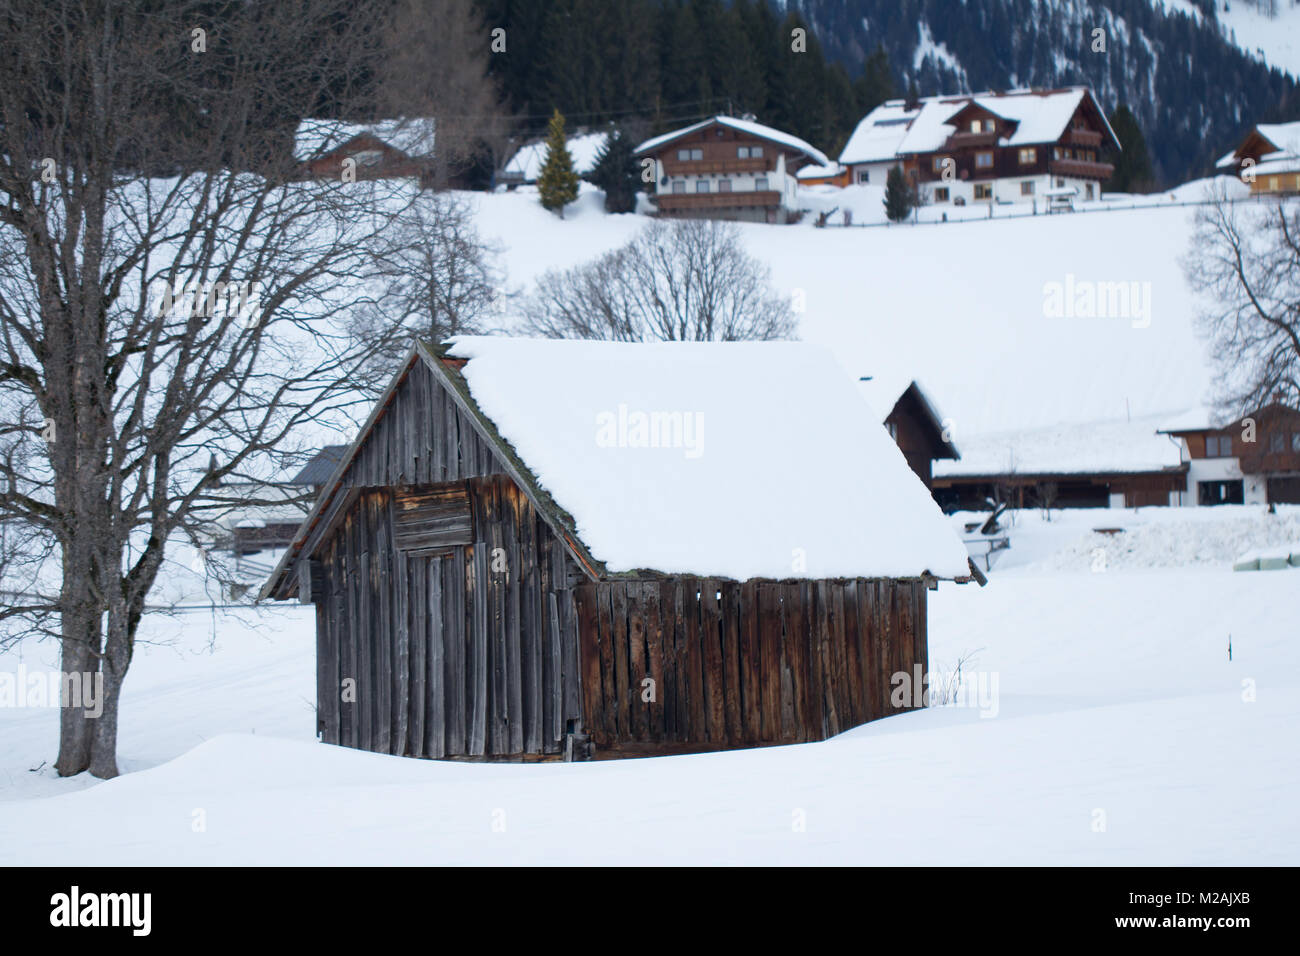 wood hut in winter snowy landscape Stock Photo